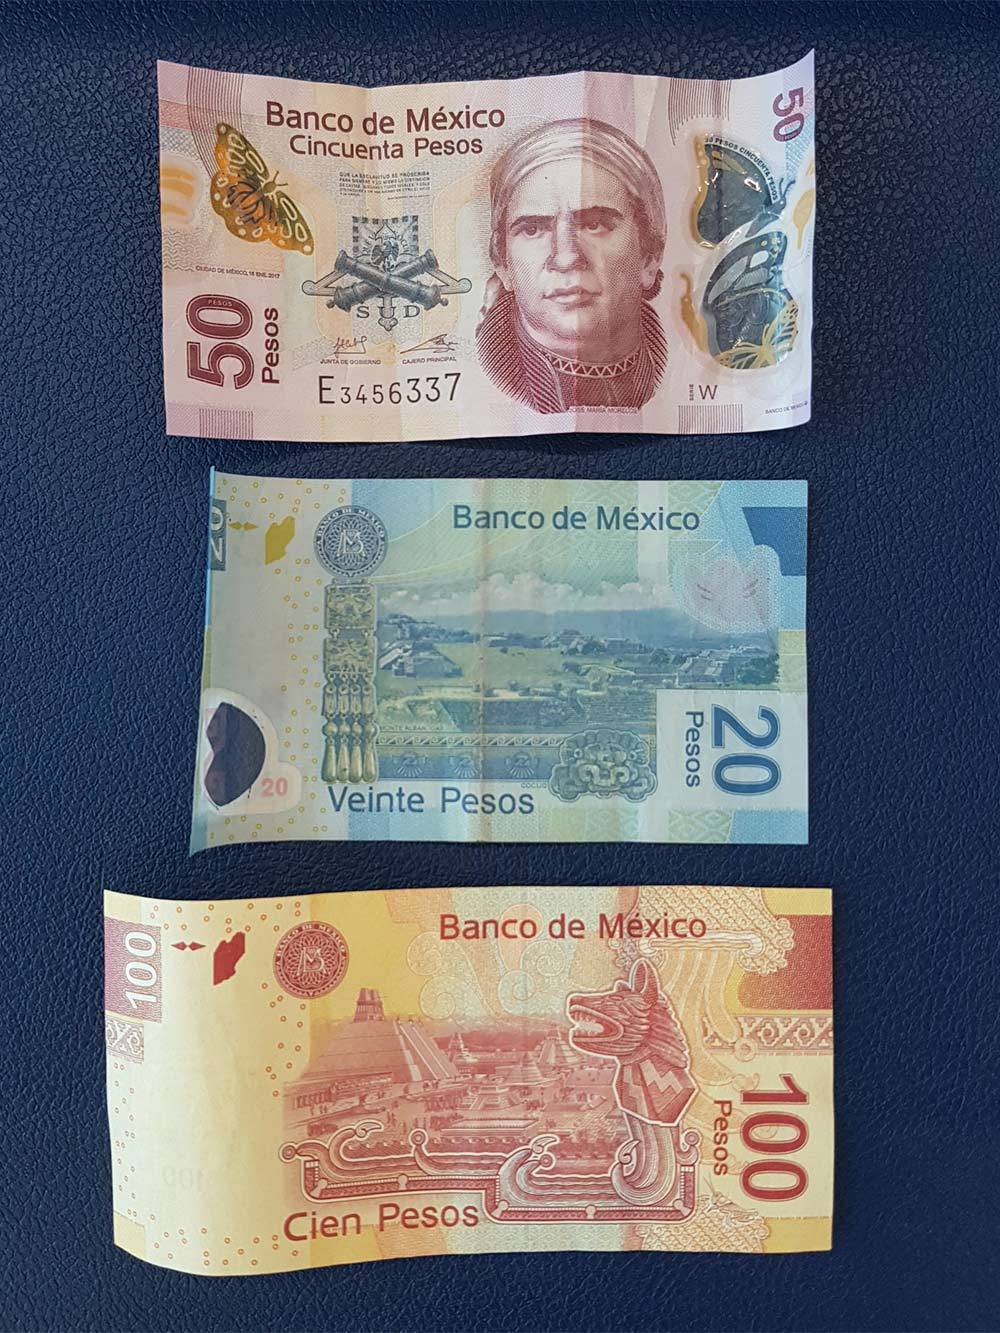 Мексиканские купюры. Банкноты в 20 и 50 песо изготавливают из полимеров, срок их службы в несколько раз дольше бумажных